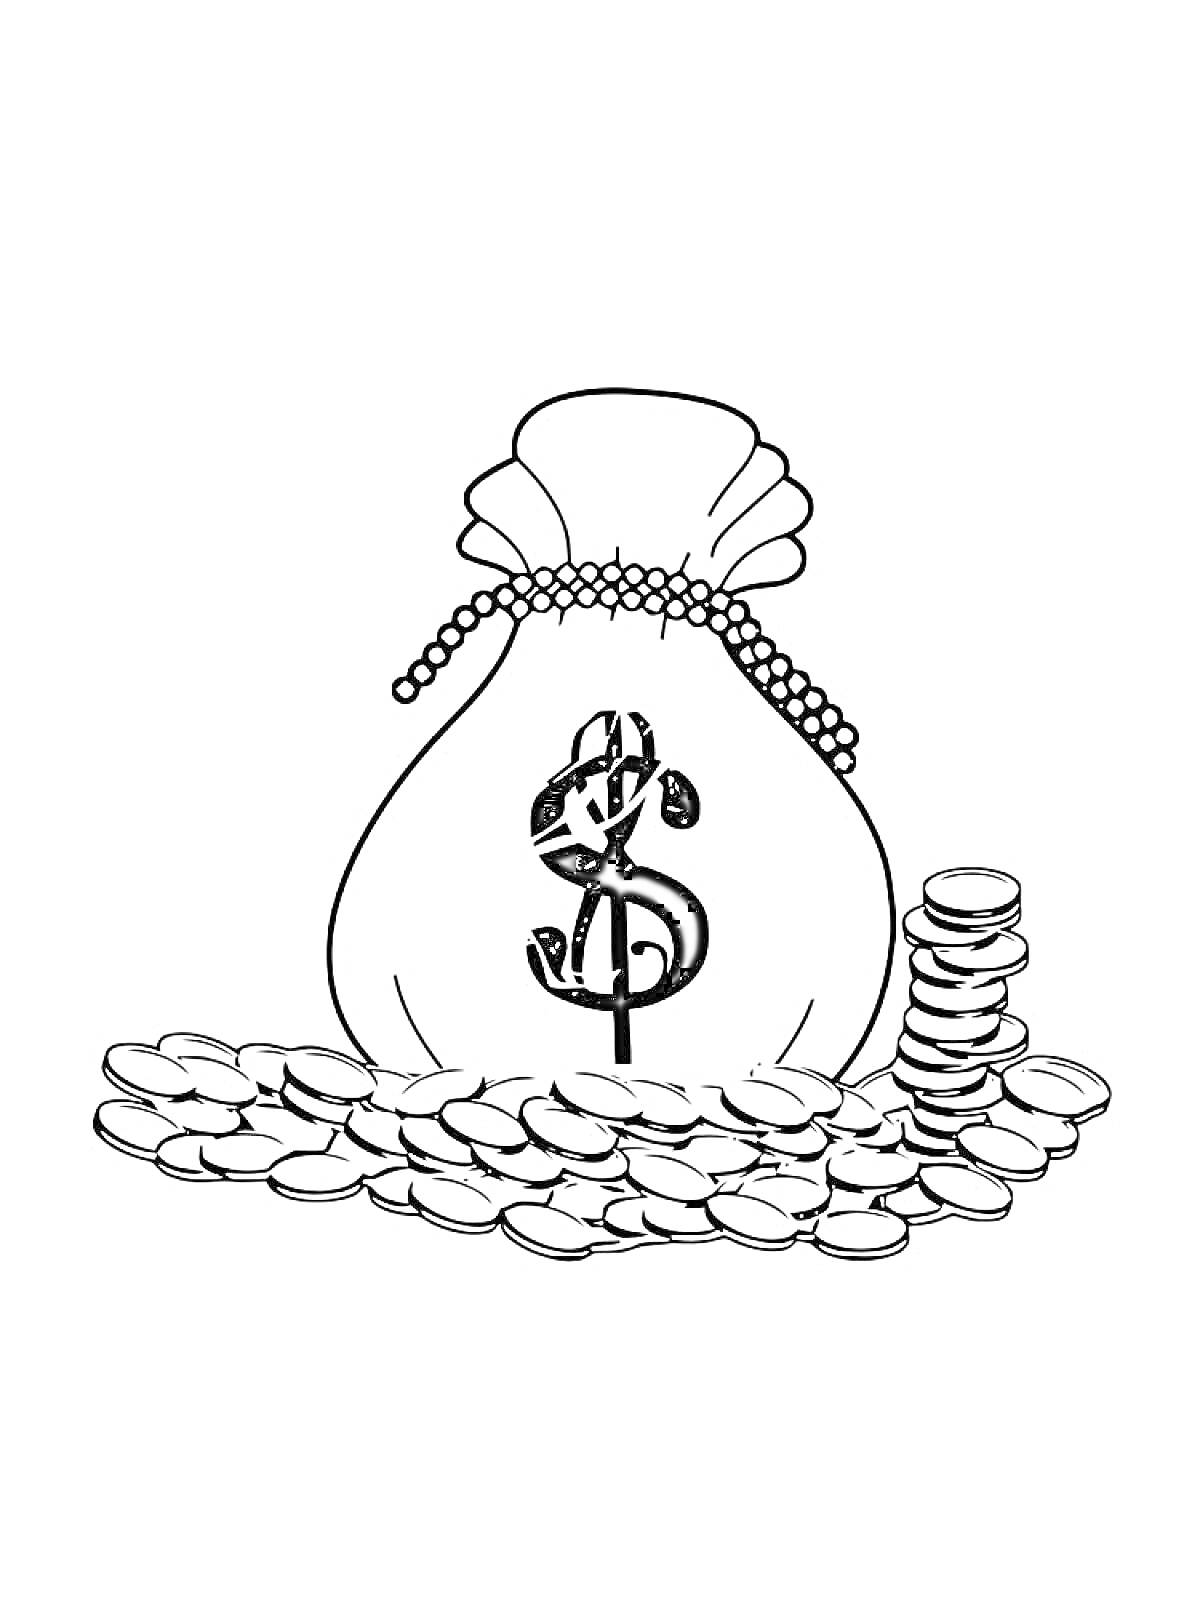 Мешок с деньгами, монеты вокруг и стопка монет рядом